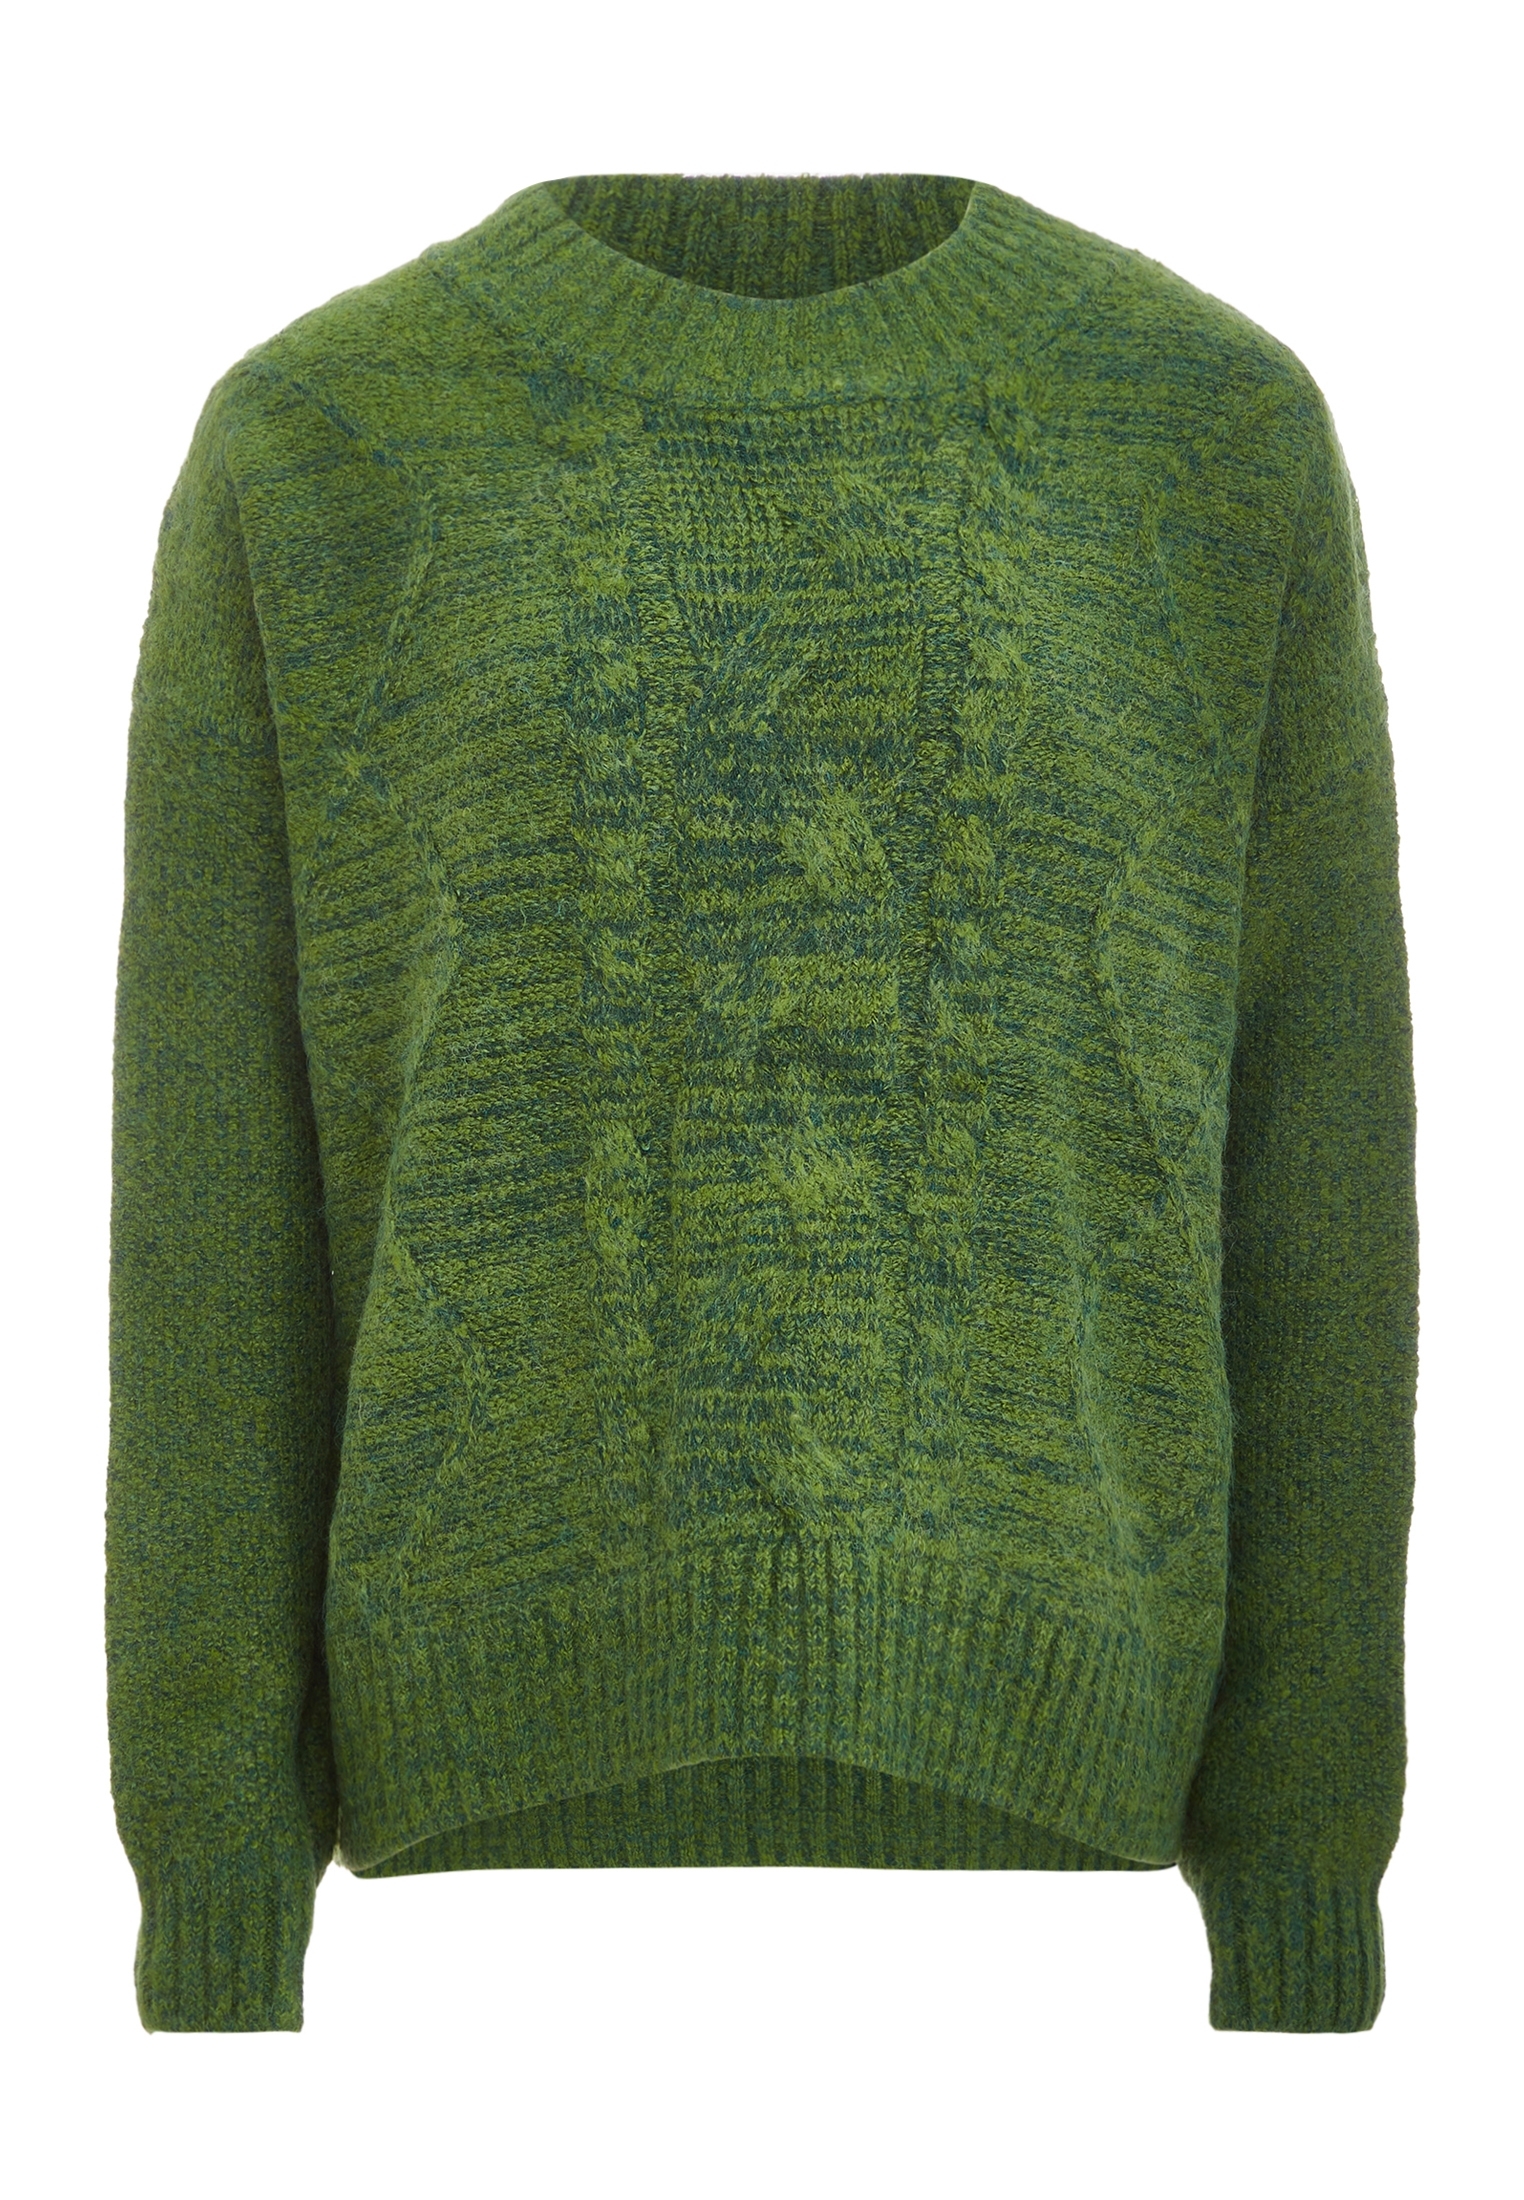 Свитер Tanuna Strick, зеленый свитер tanuna strick цвет senf